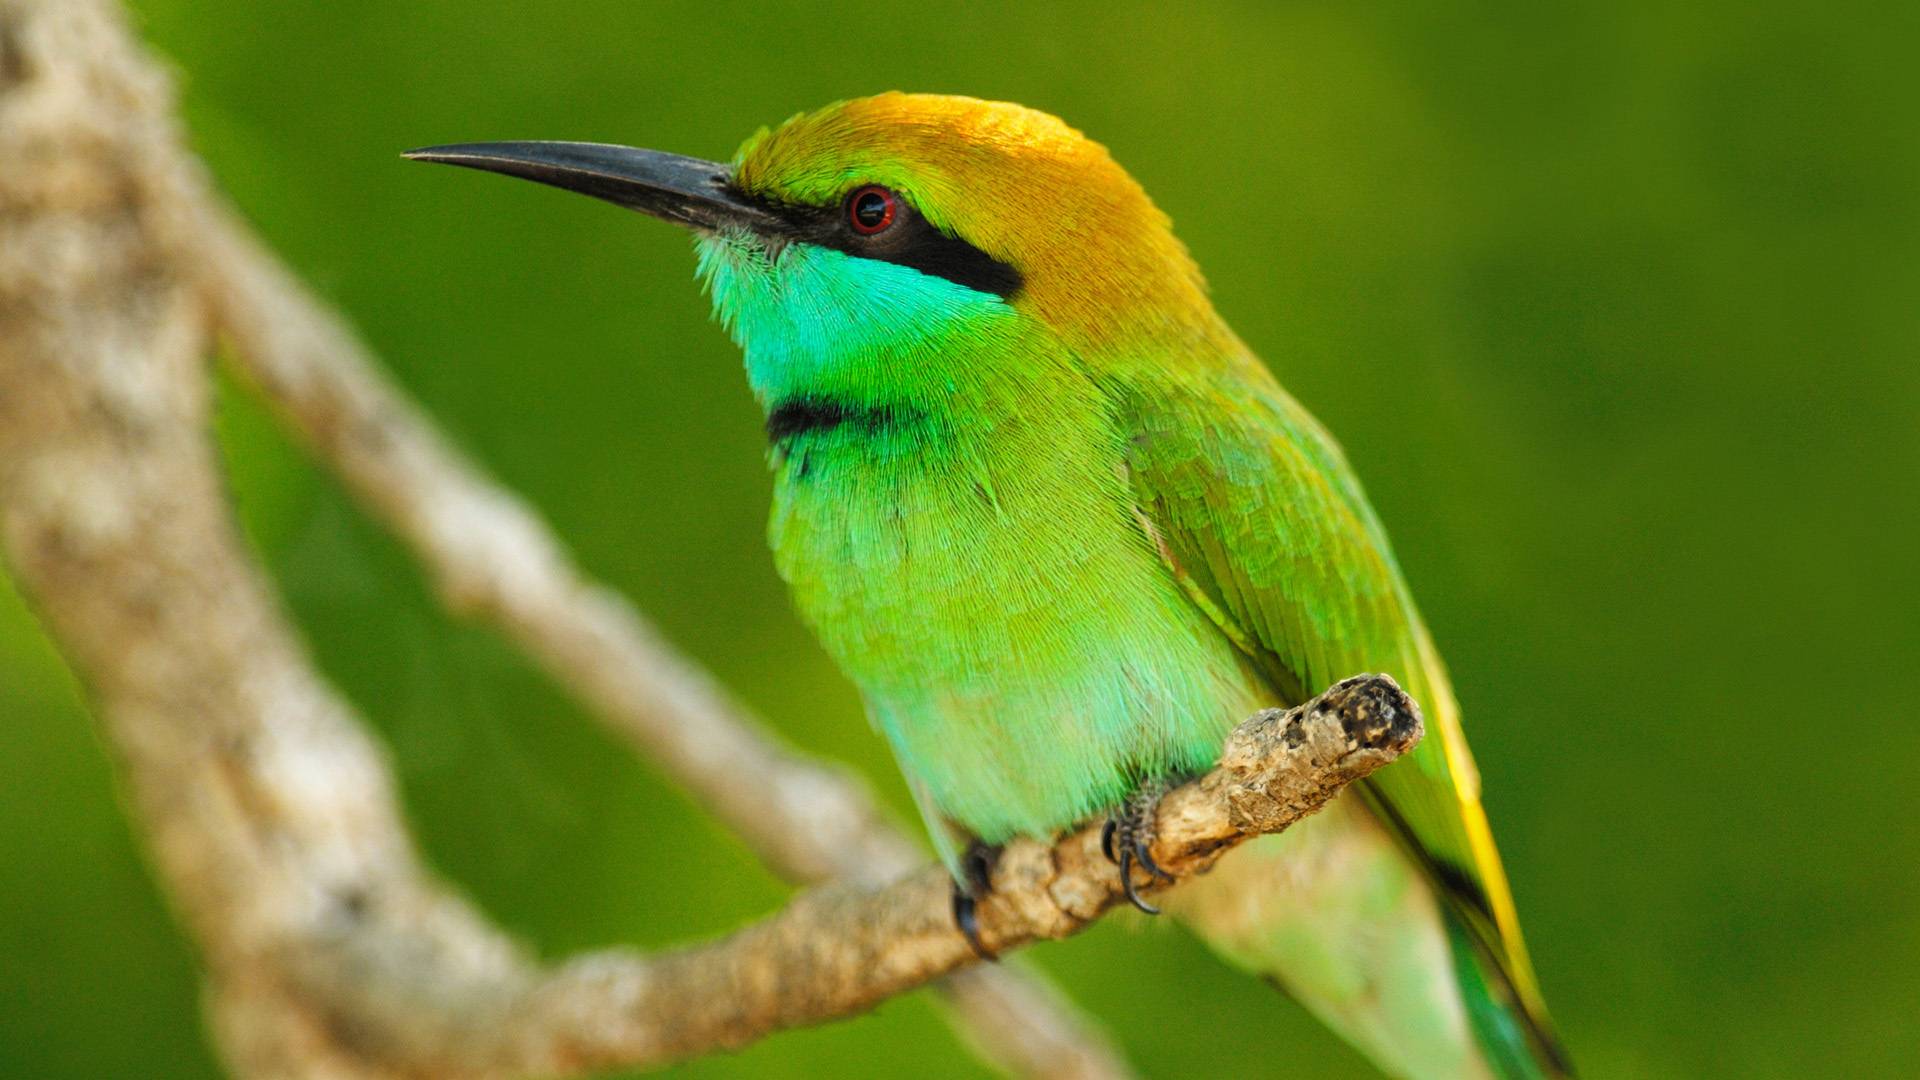 колибри на ветке, самая маленькая птица, обои скачать, Hummingbird on a branch, the smallest bird, wallpaper download